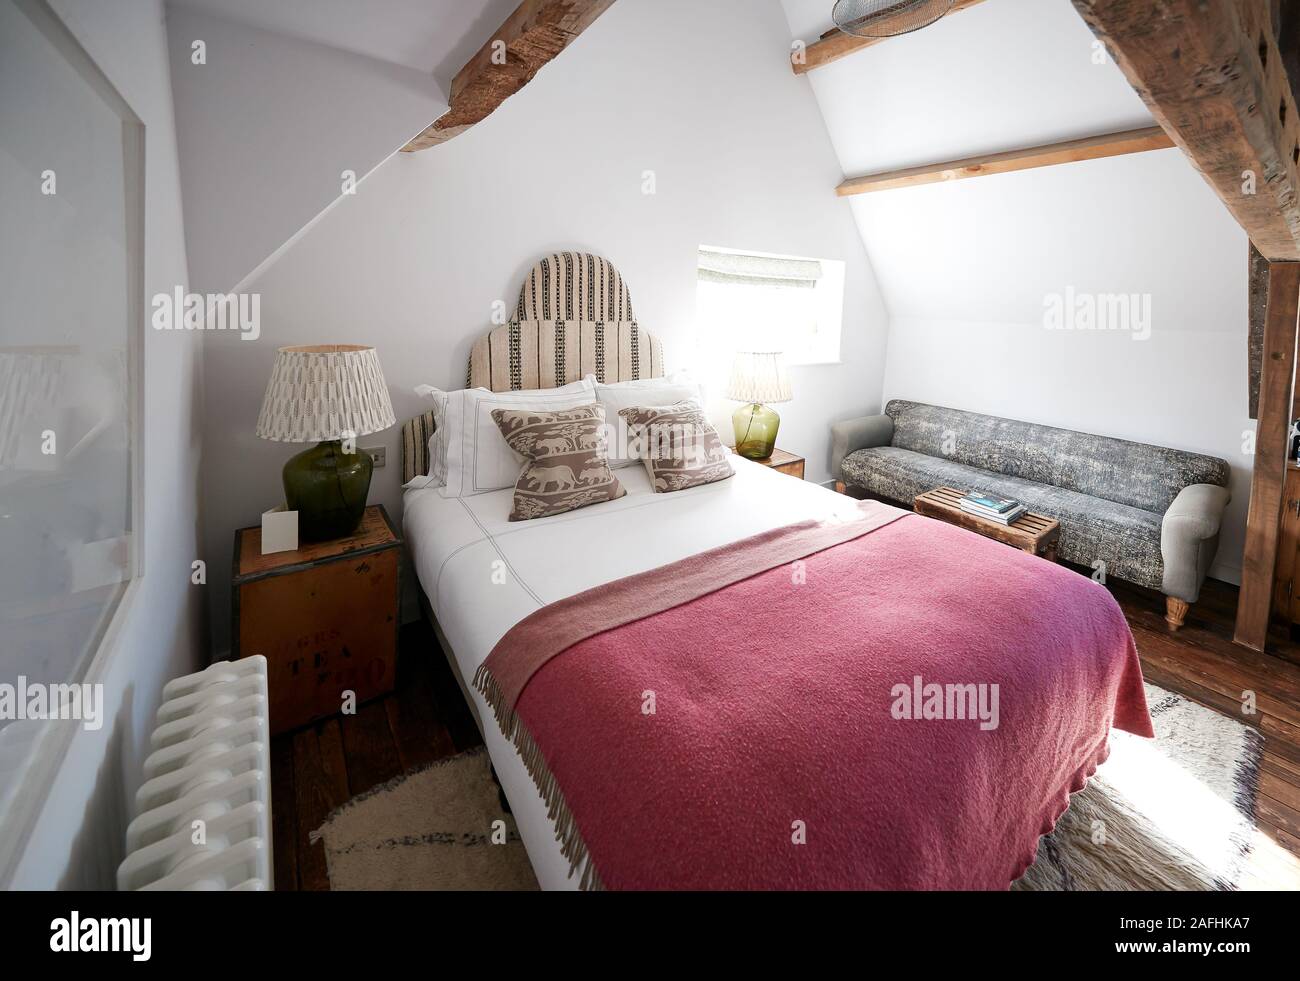 Interieur der Zimmer im Bed and Breakfast Hotel Stockfoto